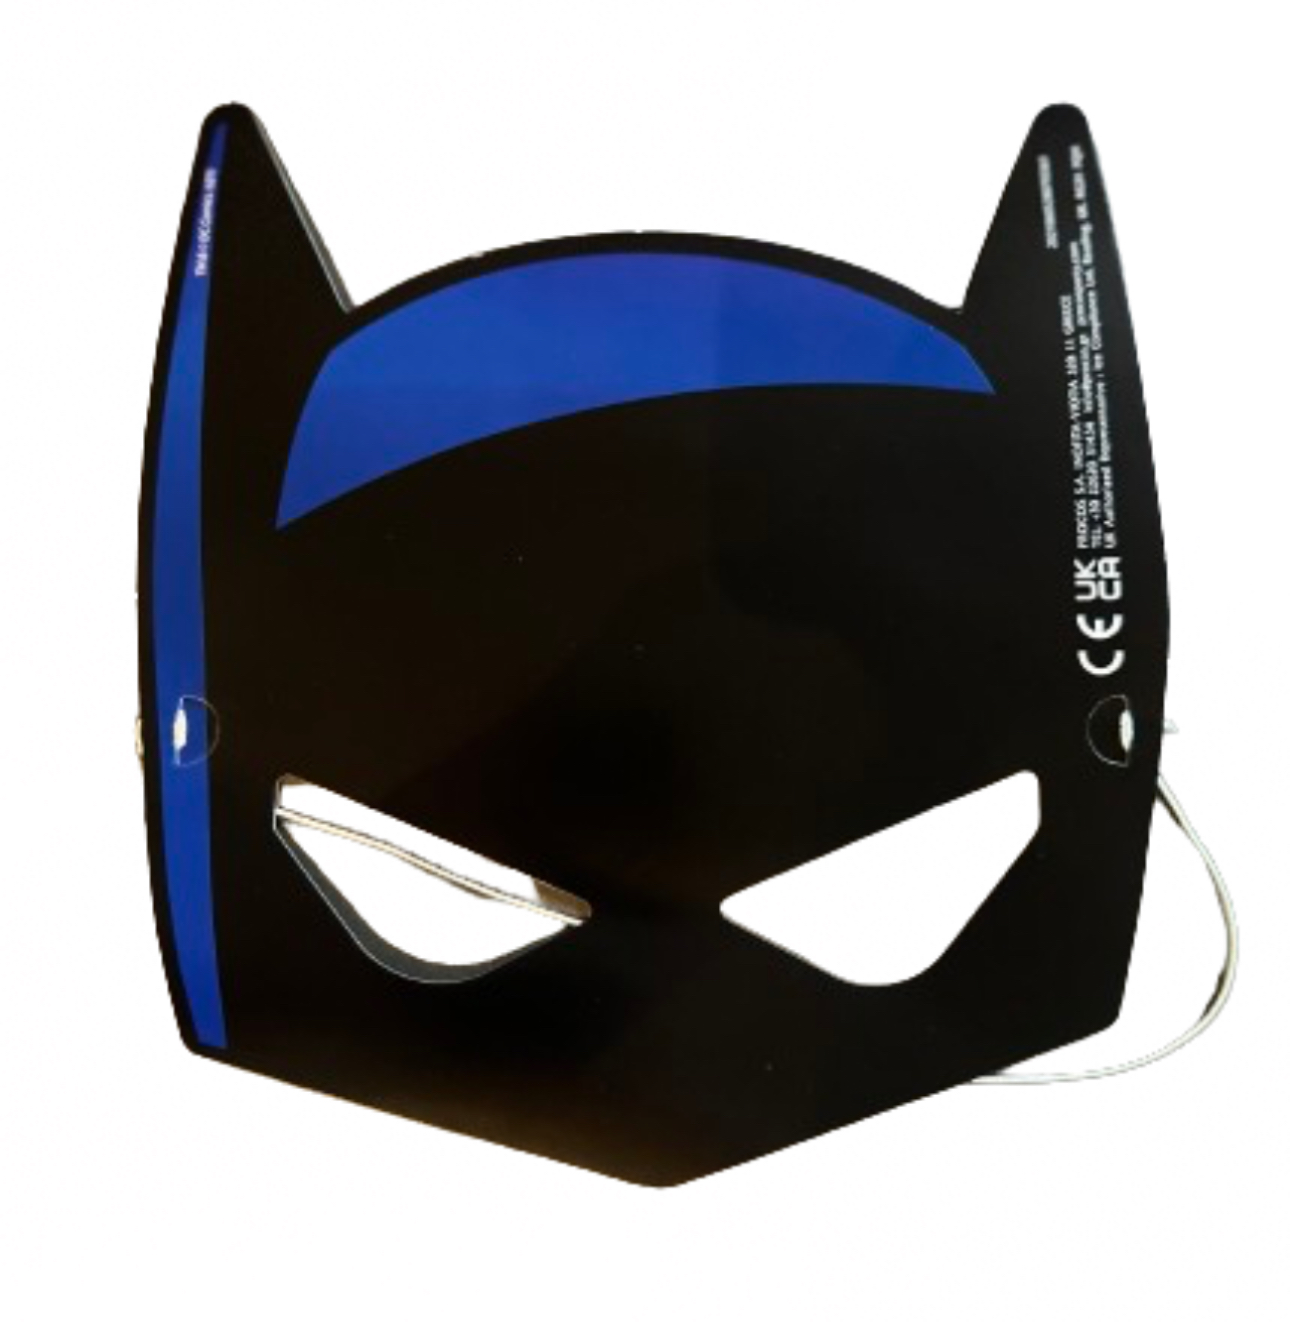 Batman 6-pack masker I papp